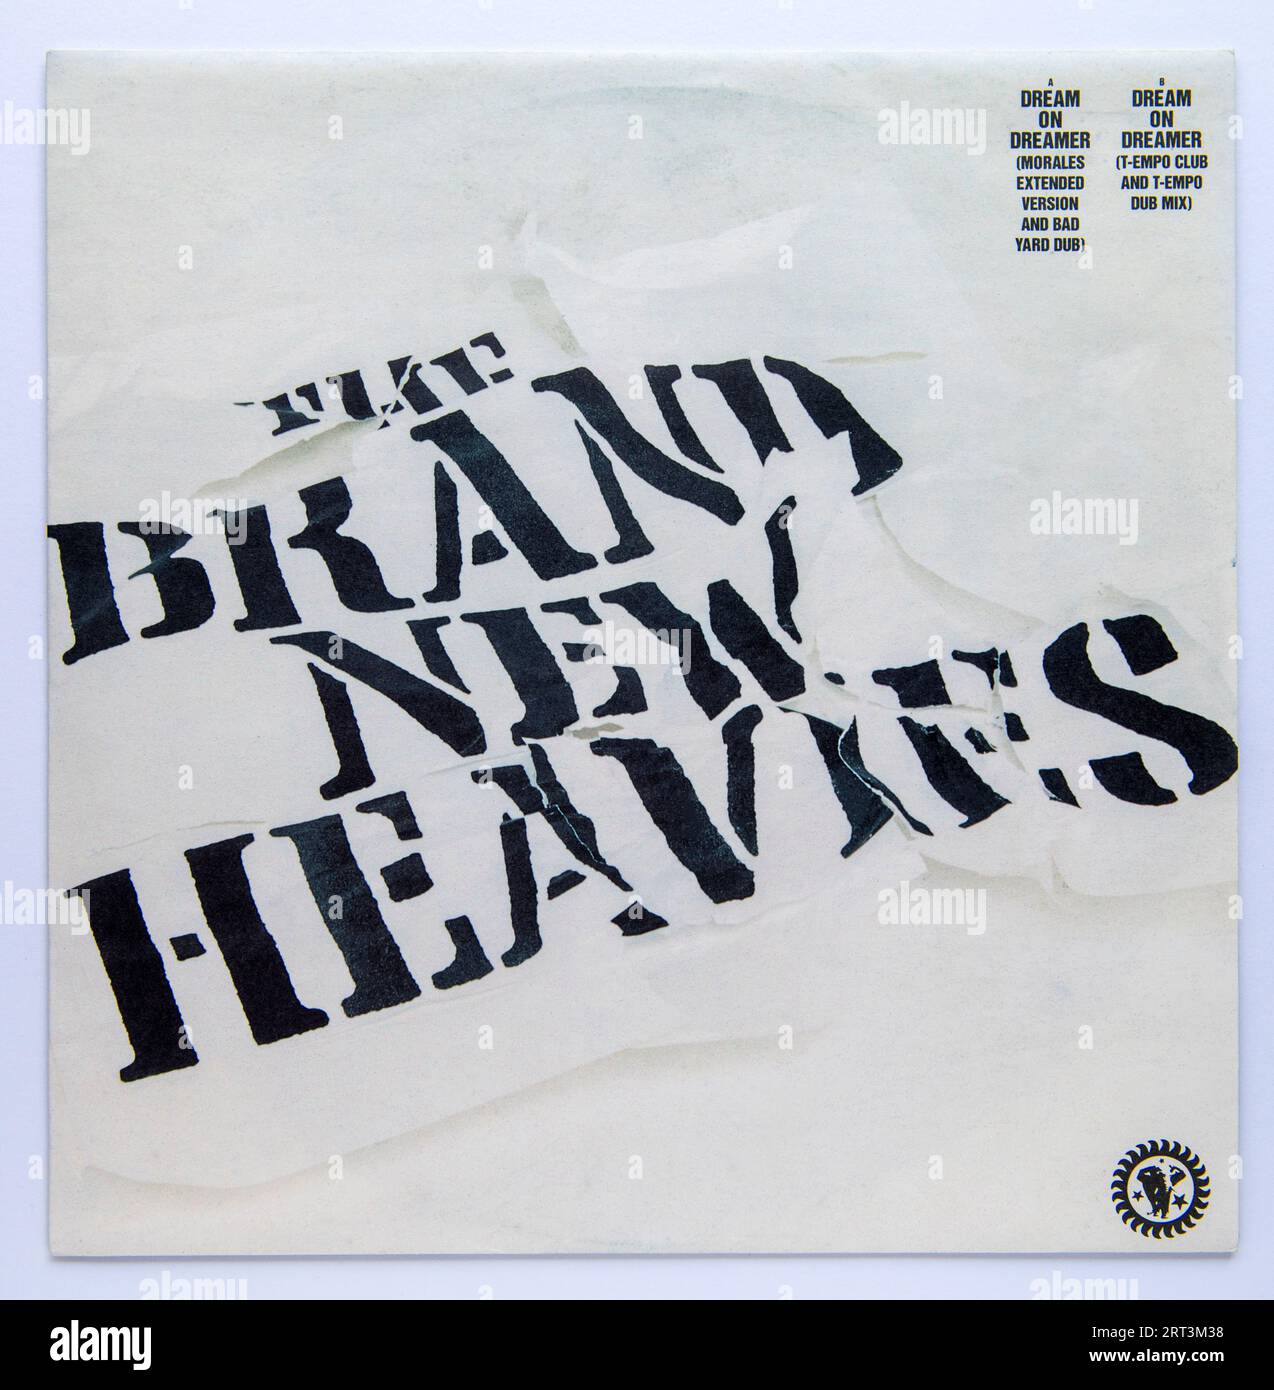 Couverture photo de la version single 12 pouces de Dream on Dreamer par The Brand New Heavies, qui a été publié en 1994 Banque D'Images